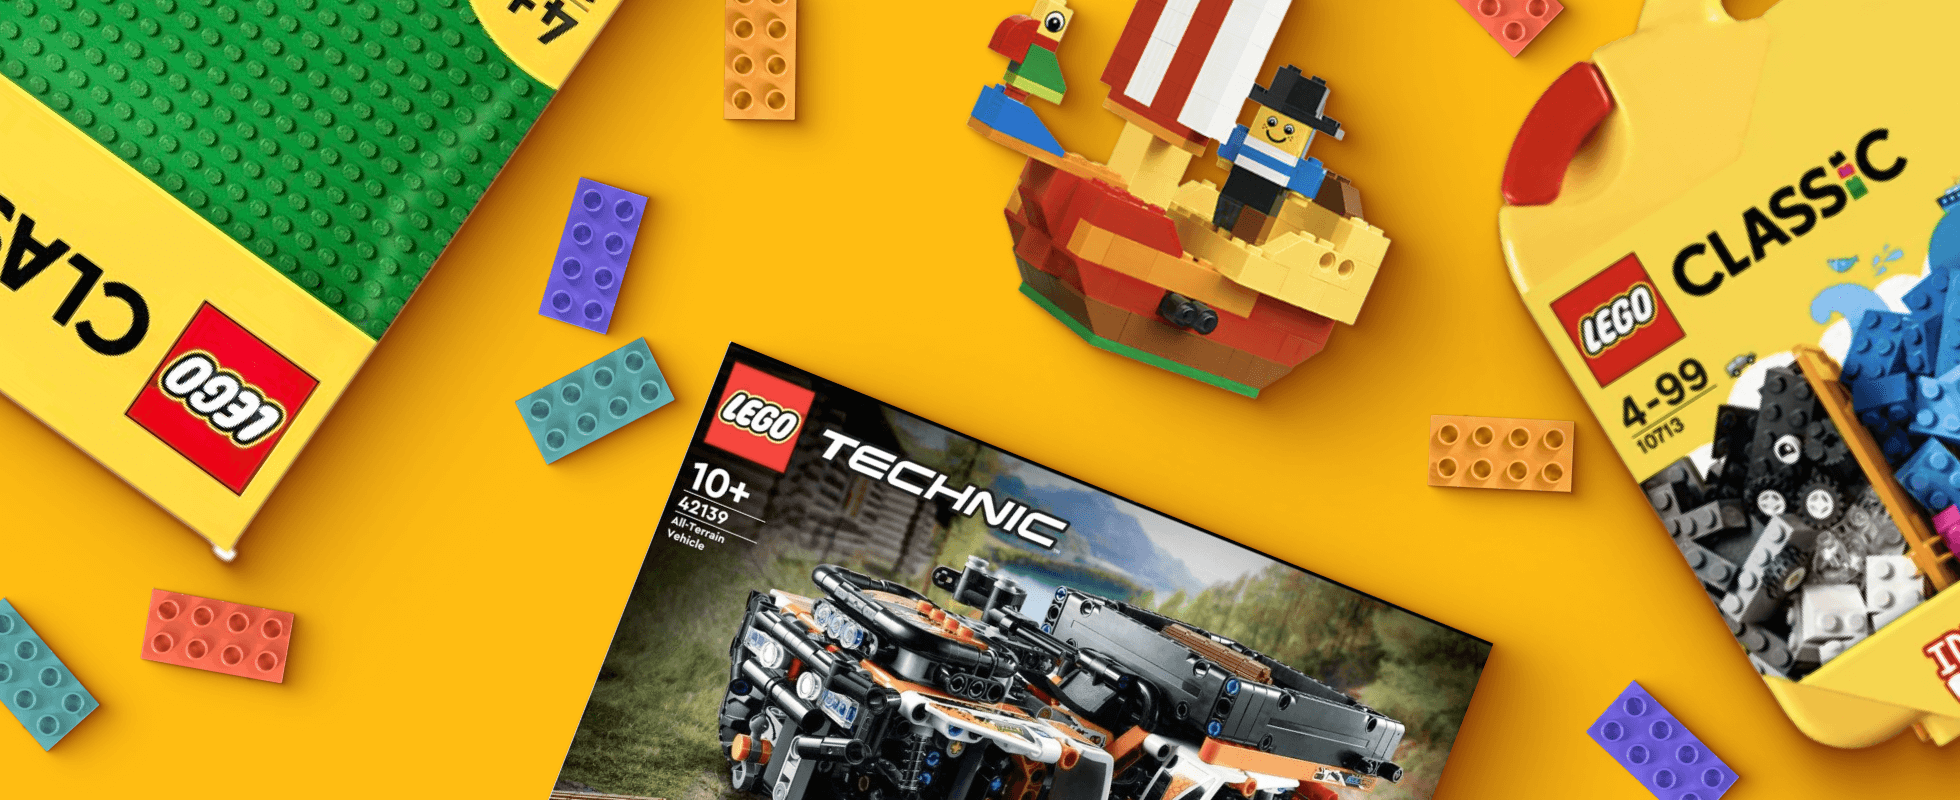 Un Petit Garçon Pour Construire Une Tour De Lego Image stock